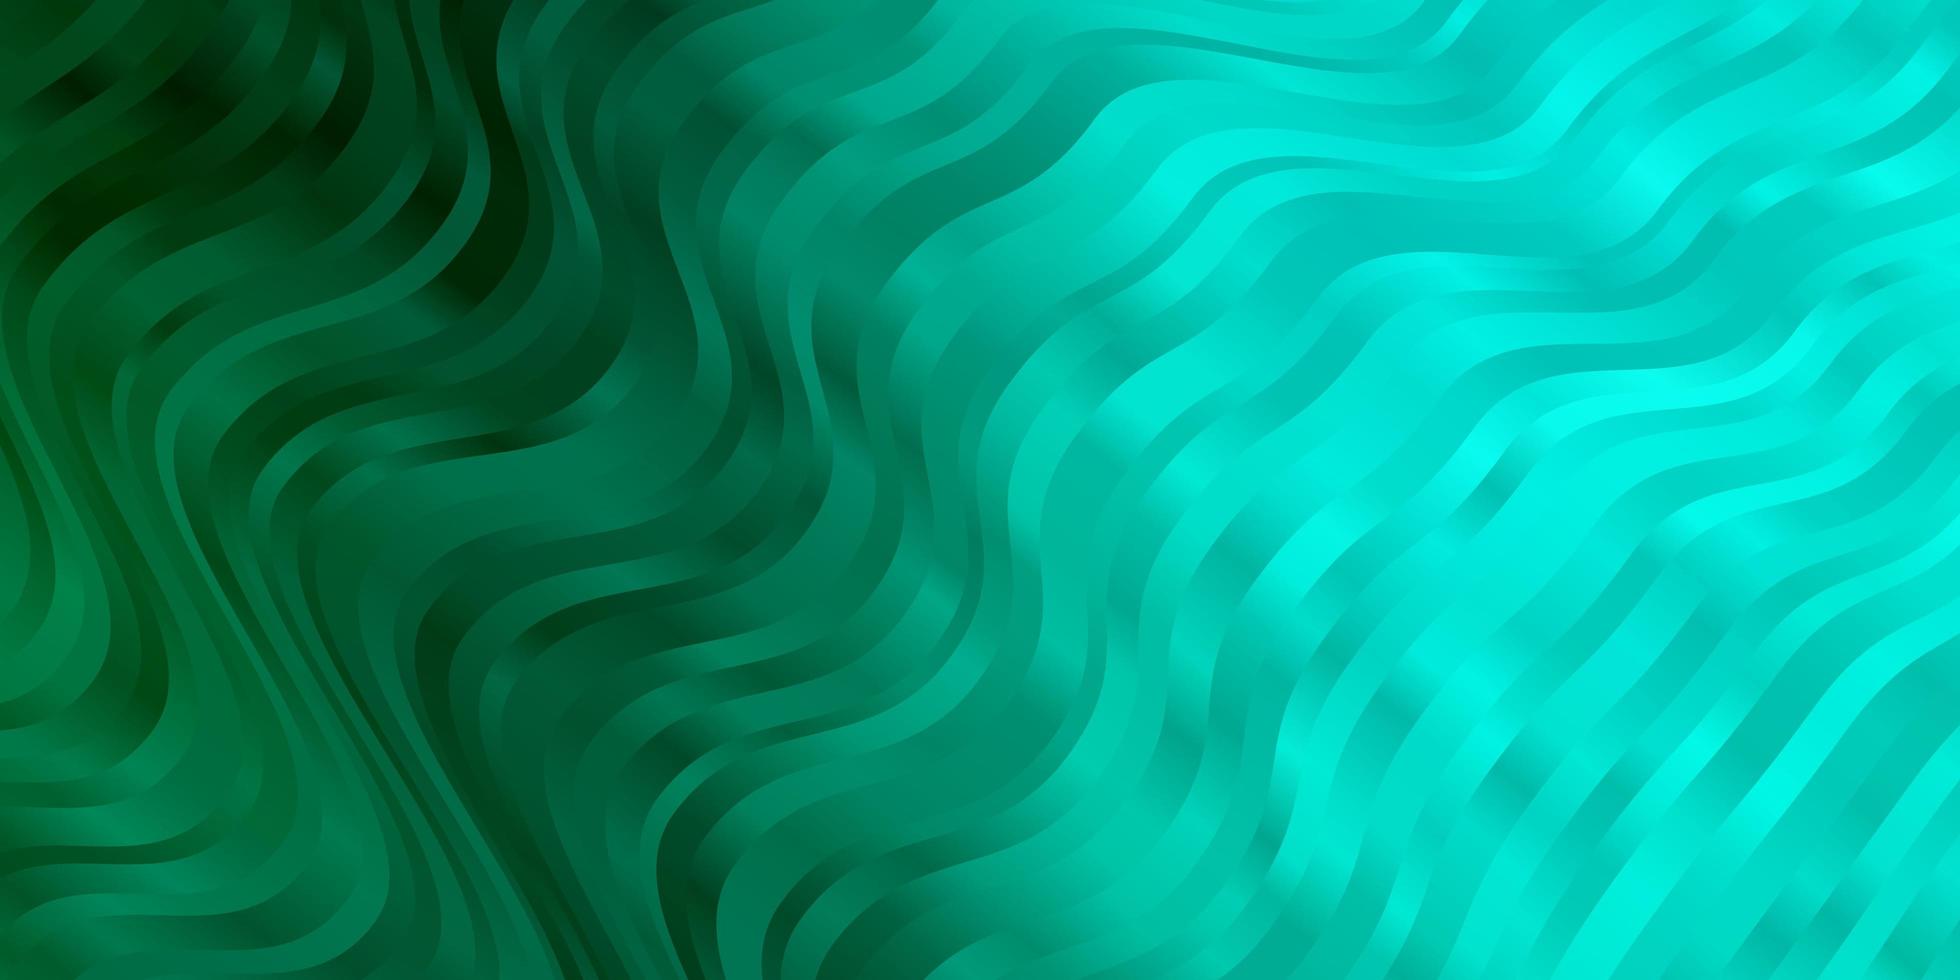 ljusgrön vektorlayout med cirkulär båge abstrakt illustration med bandy gradient linjer mönster för reklamannonser vektor